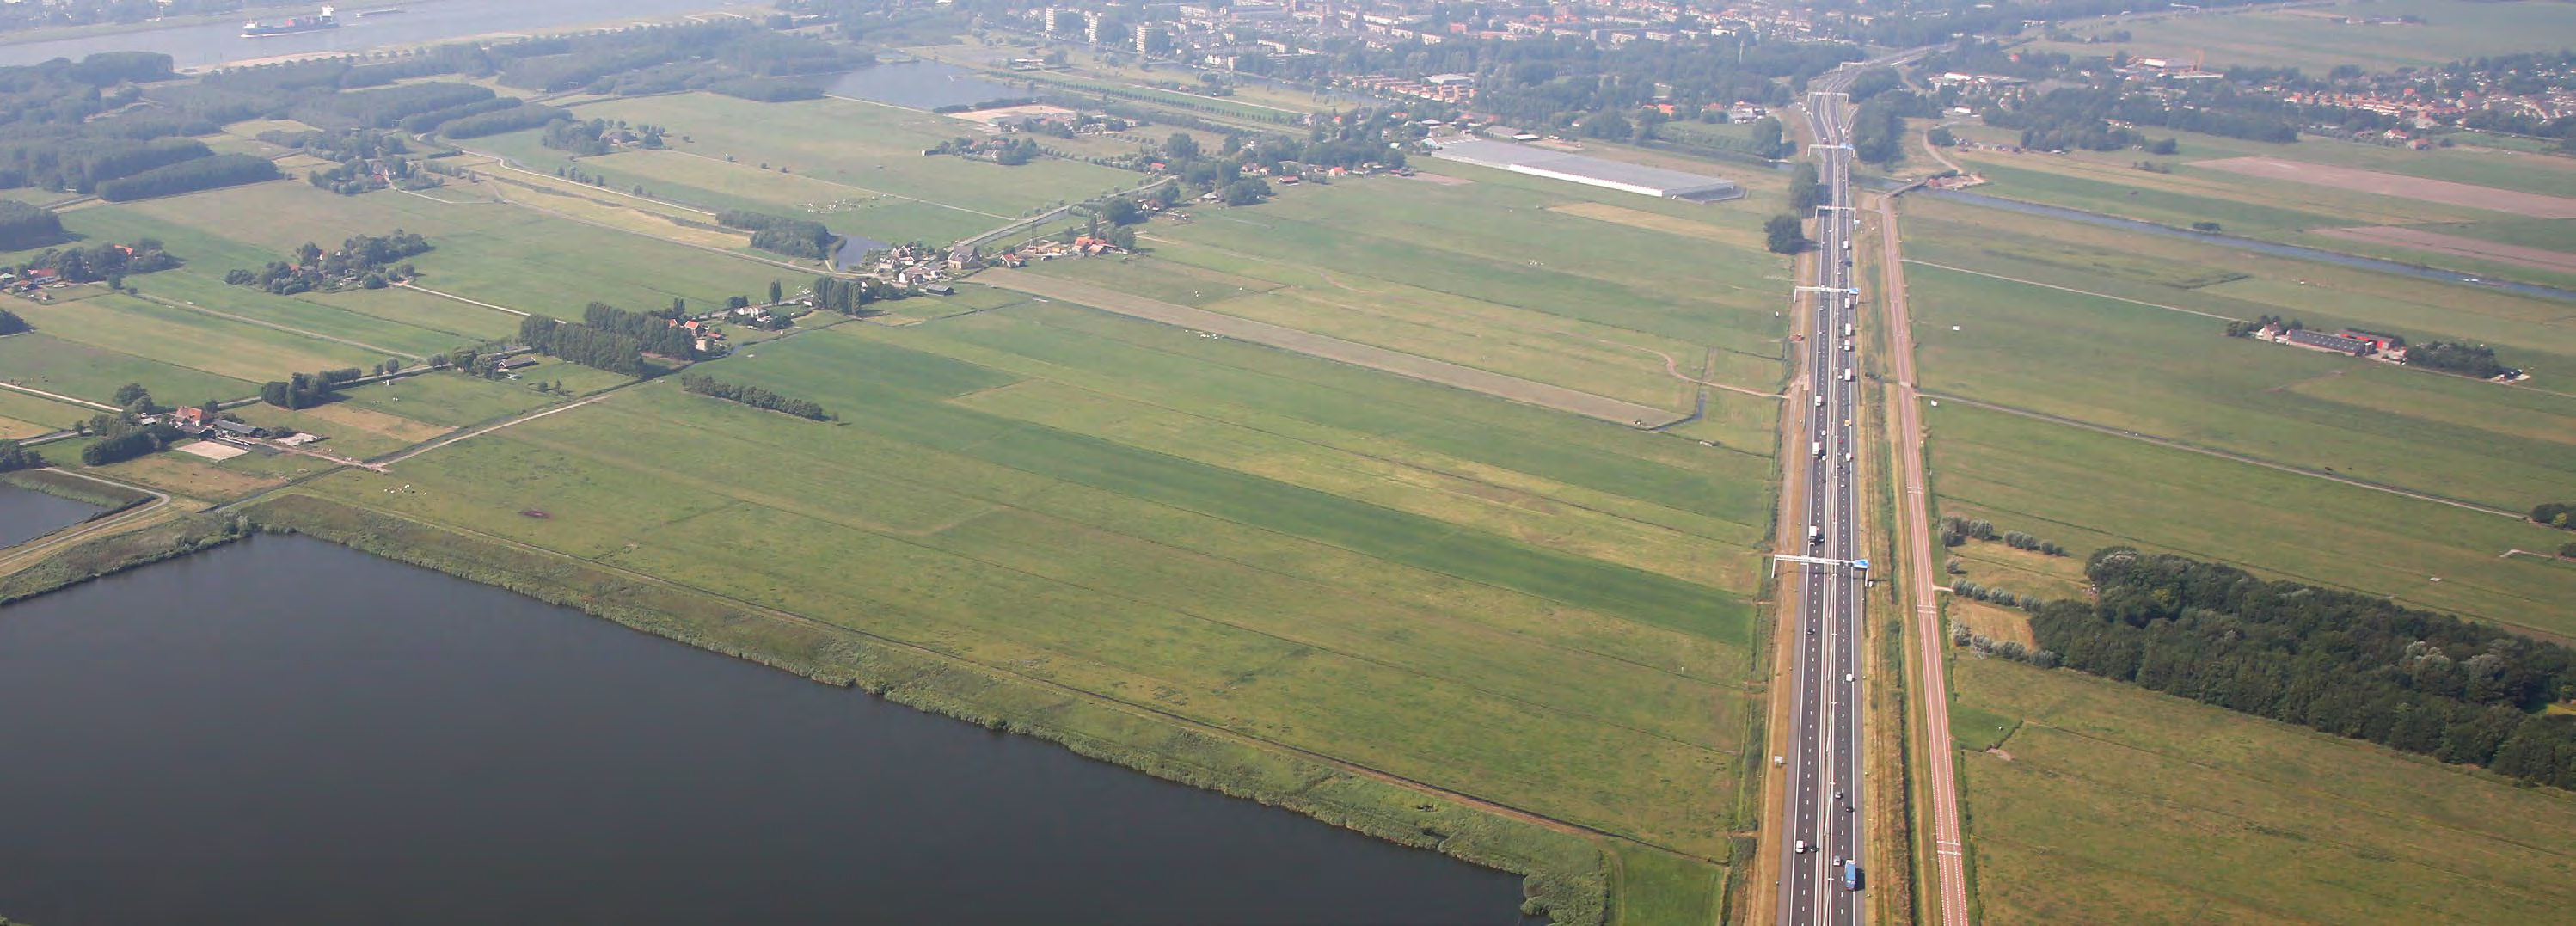 2.3.3 Aalkeet-Buiten polder De Aalkeet-Buitenpolder is onderdeel van het karakteristieke open veenweidelandschap van Midden Delfland, met kilometerslange